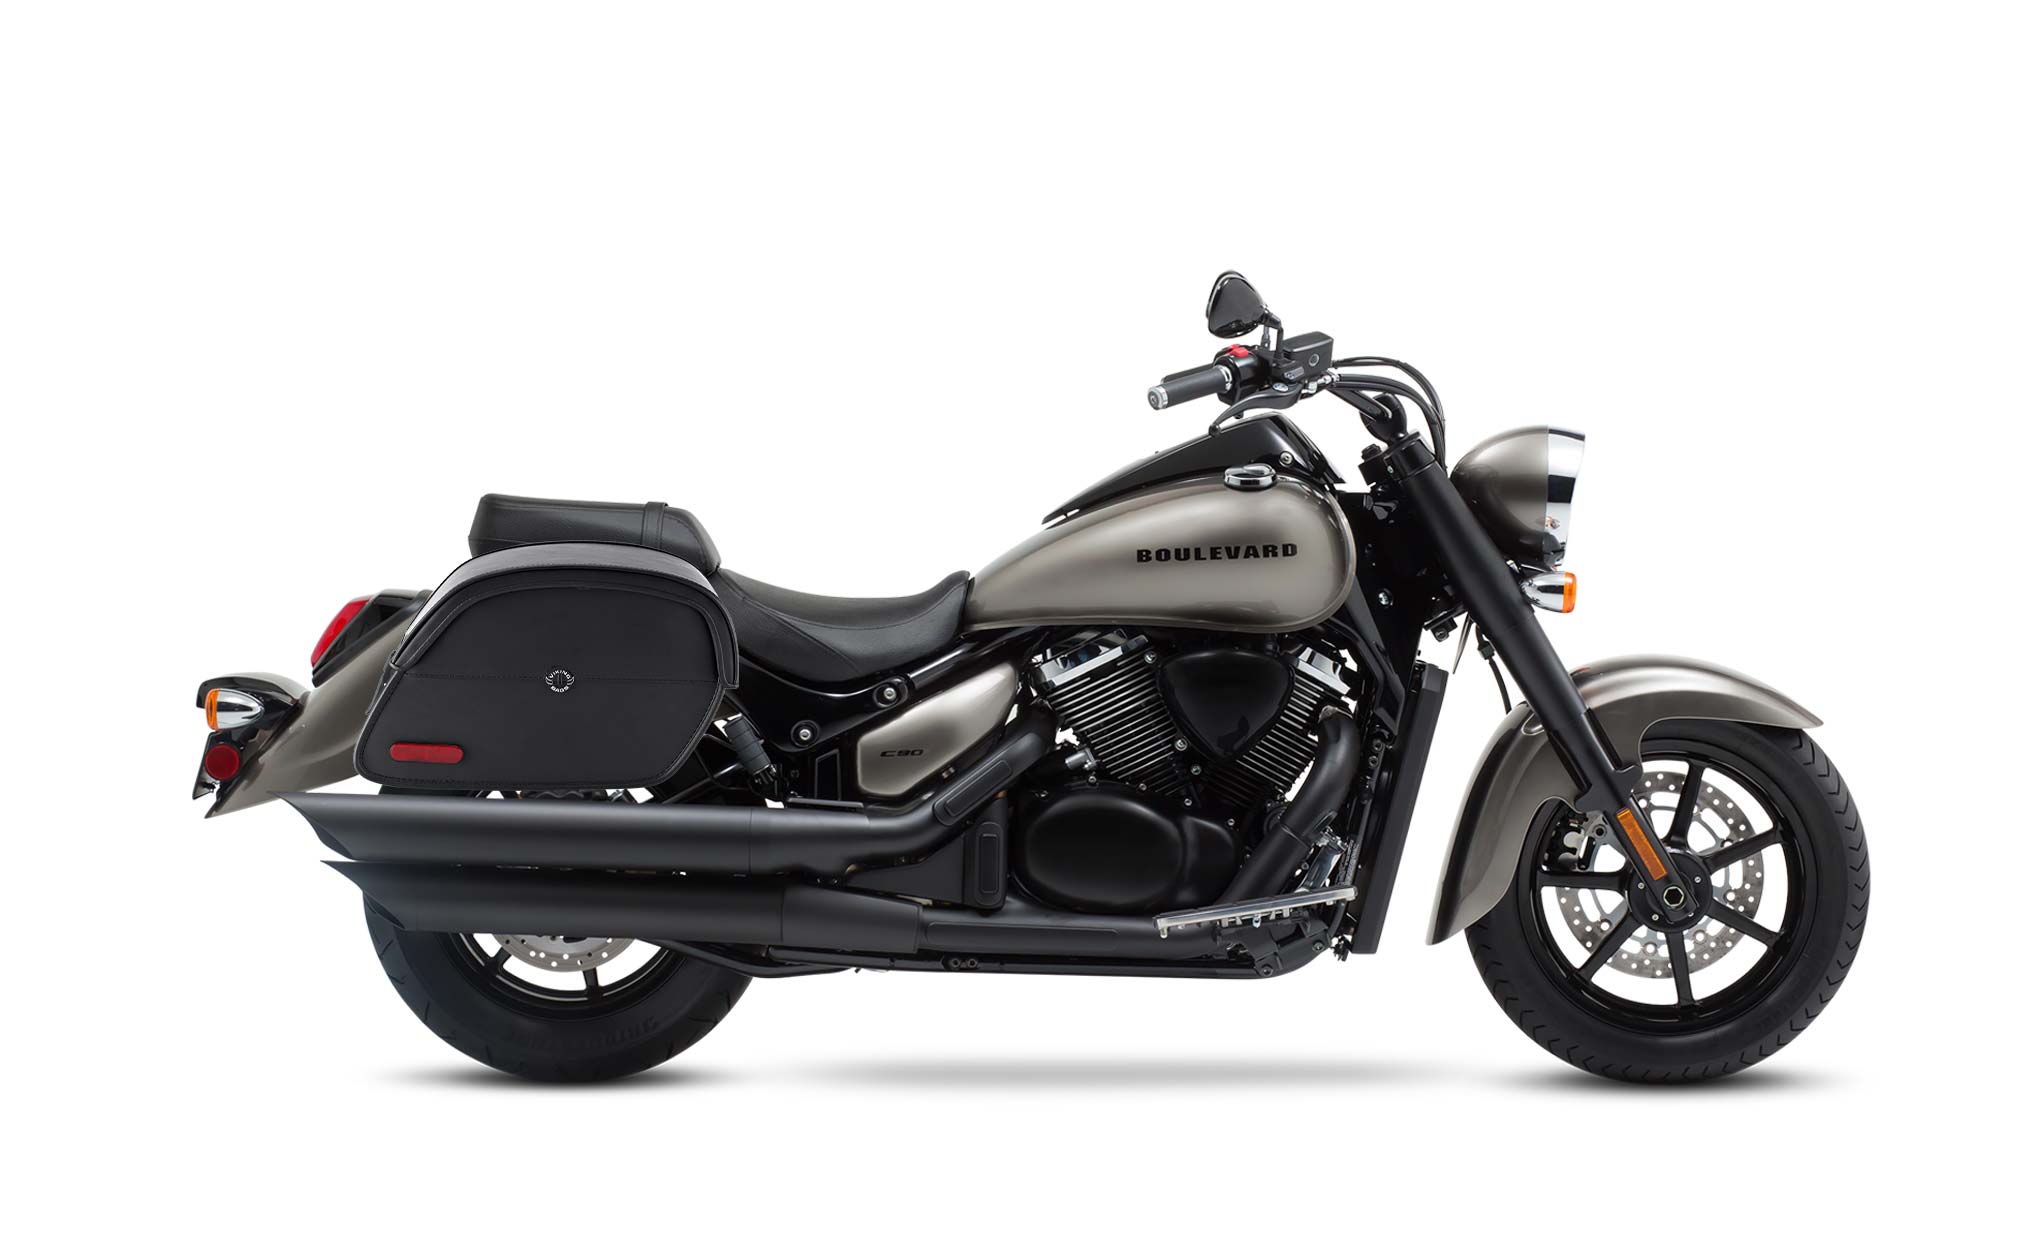 Viking California Large Suzuki Boulevard C90 Vl1500 Leather Motorcycle Saddlebags on Bike Photo @expand